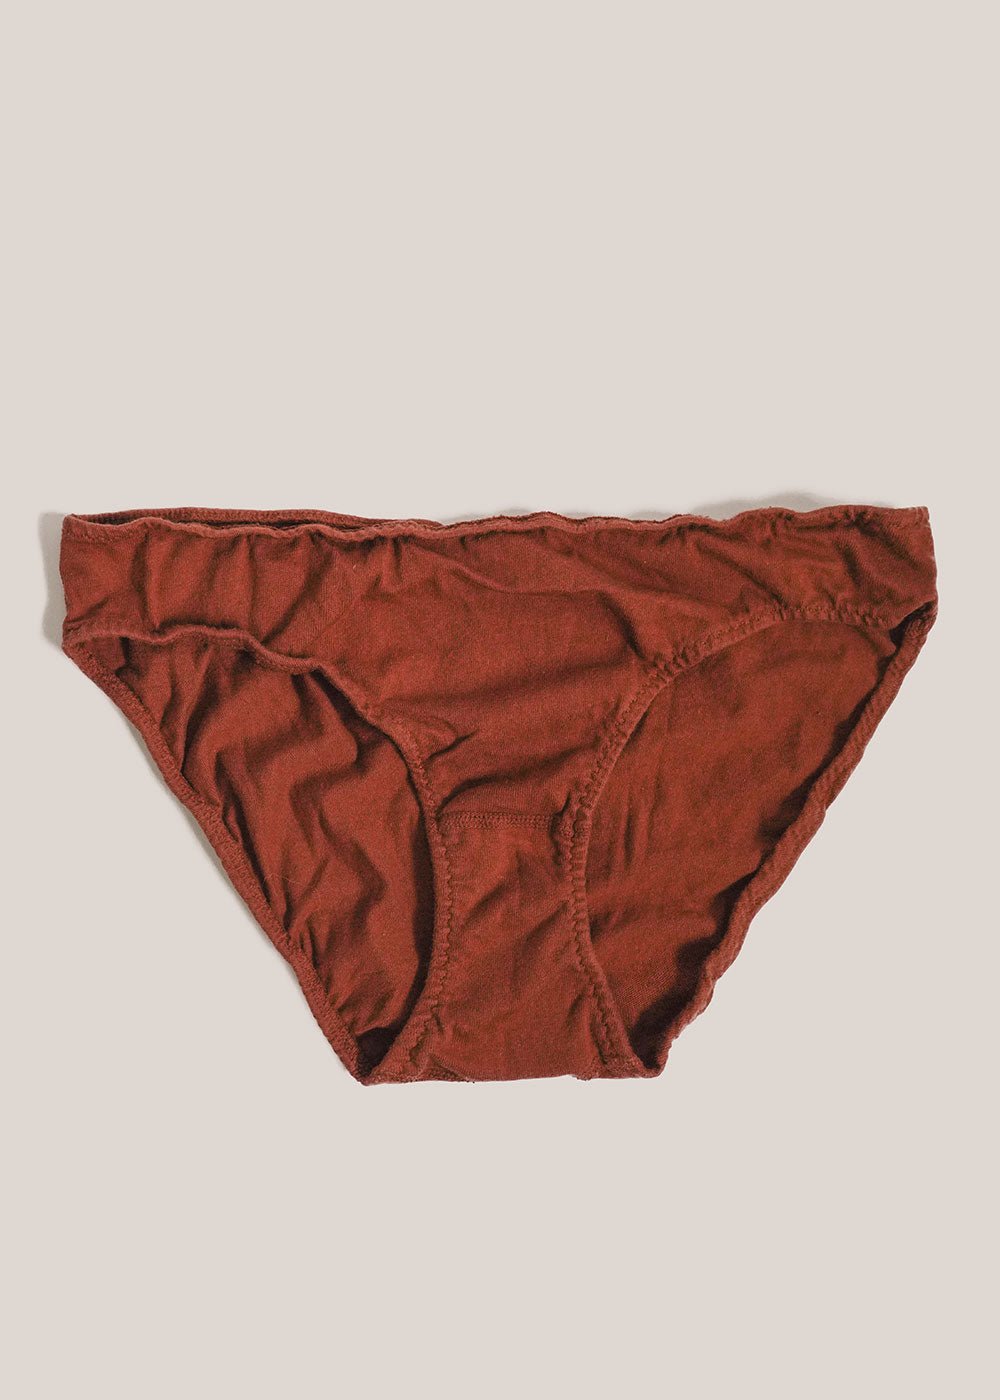 Reversible underwear and skidmark resistant underwear